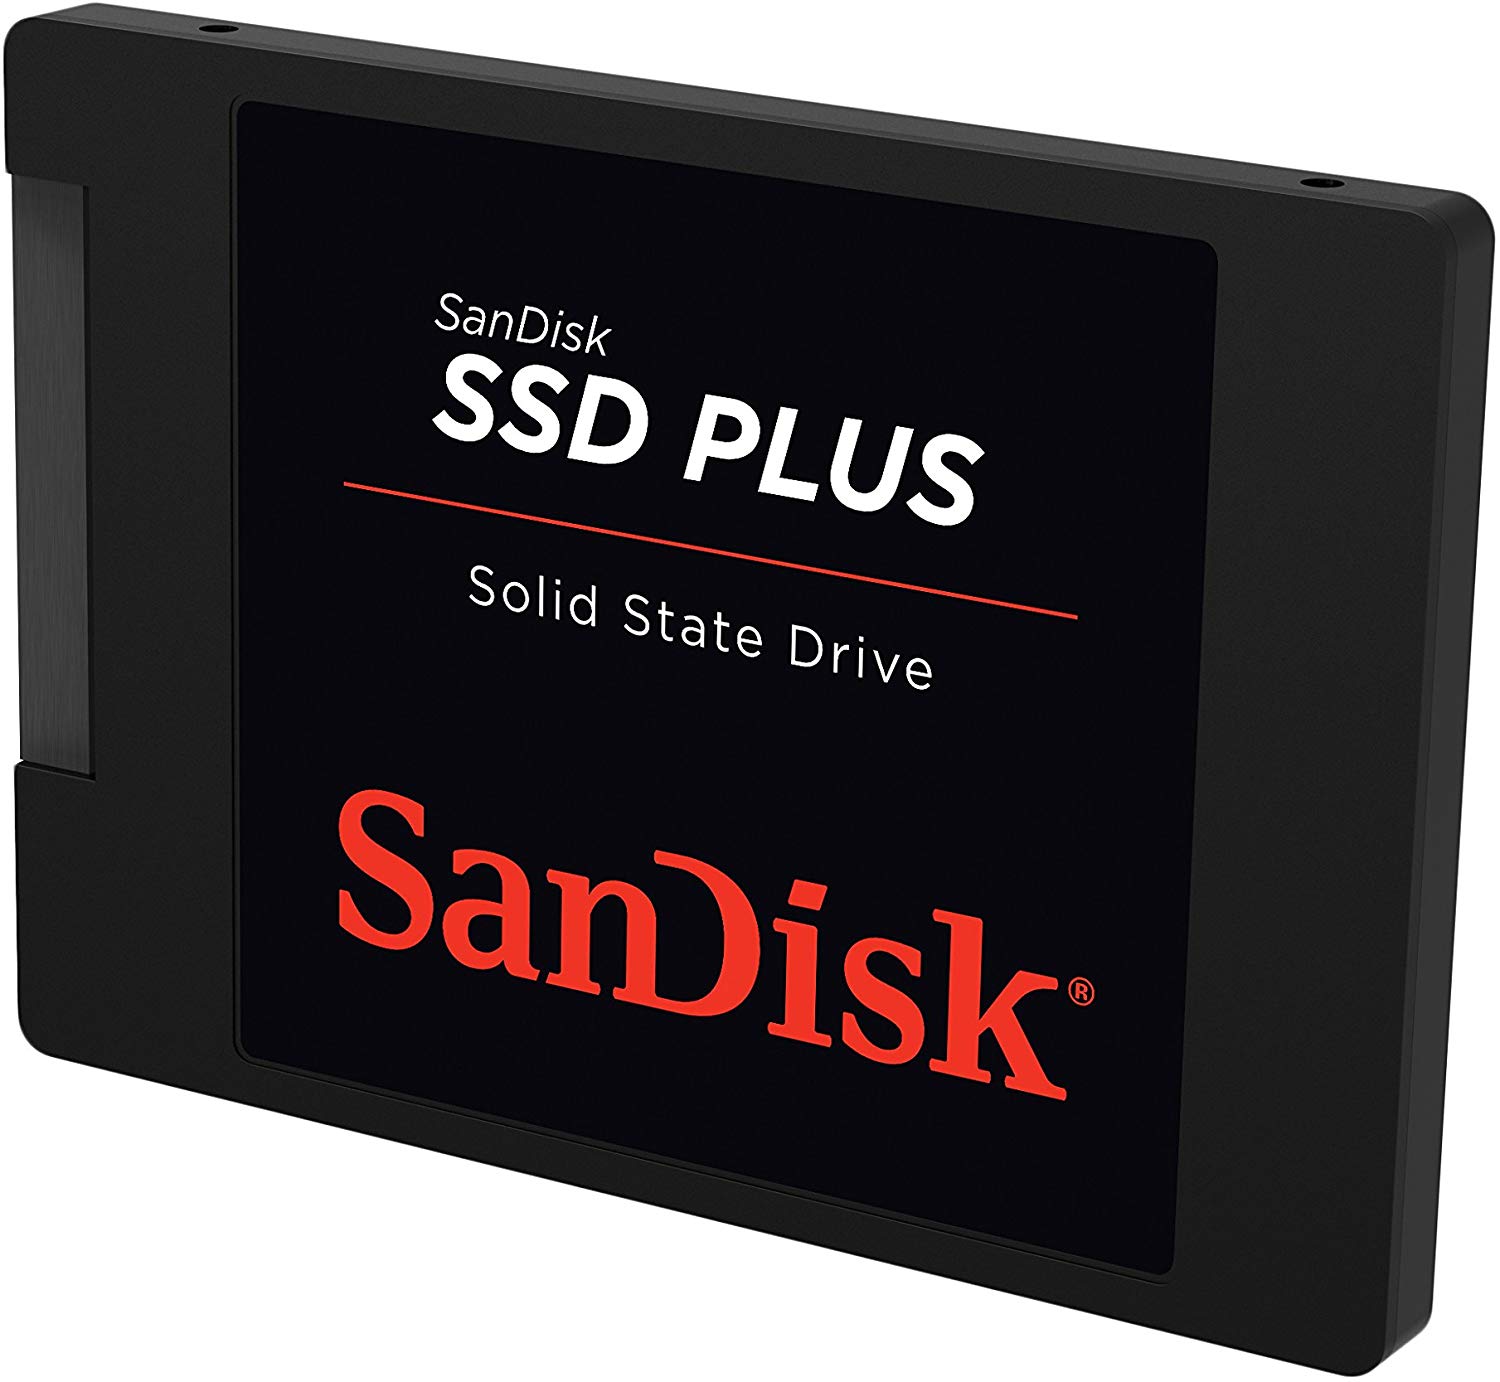 Disque Dur pas cher - Le SSD SanDisk Plus de 1 To à 99,95 €